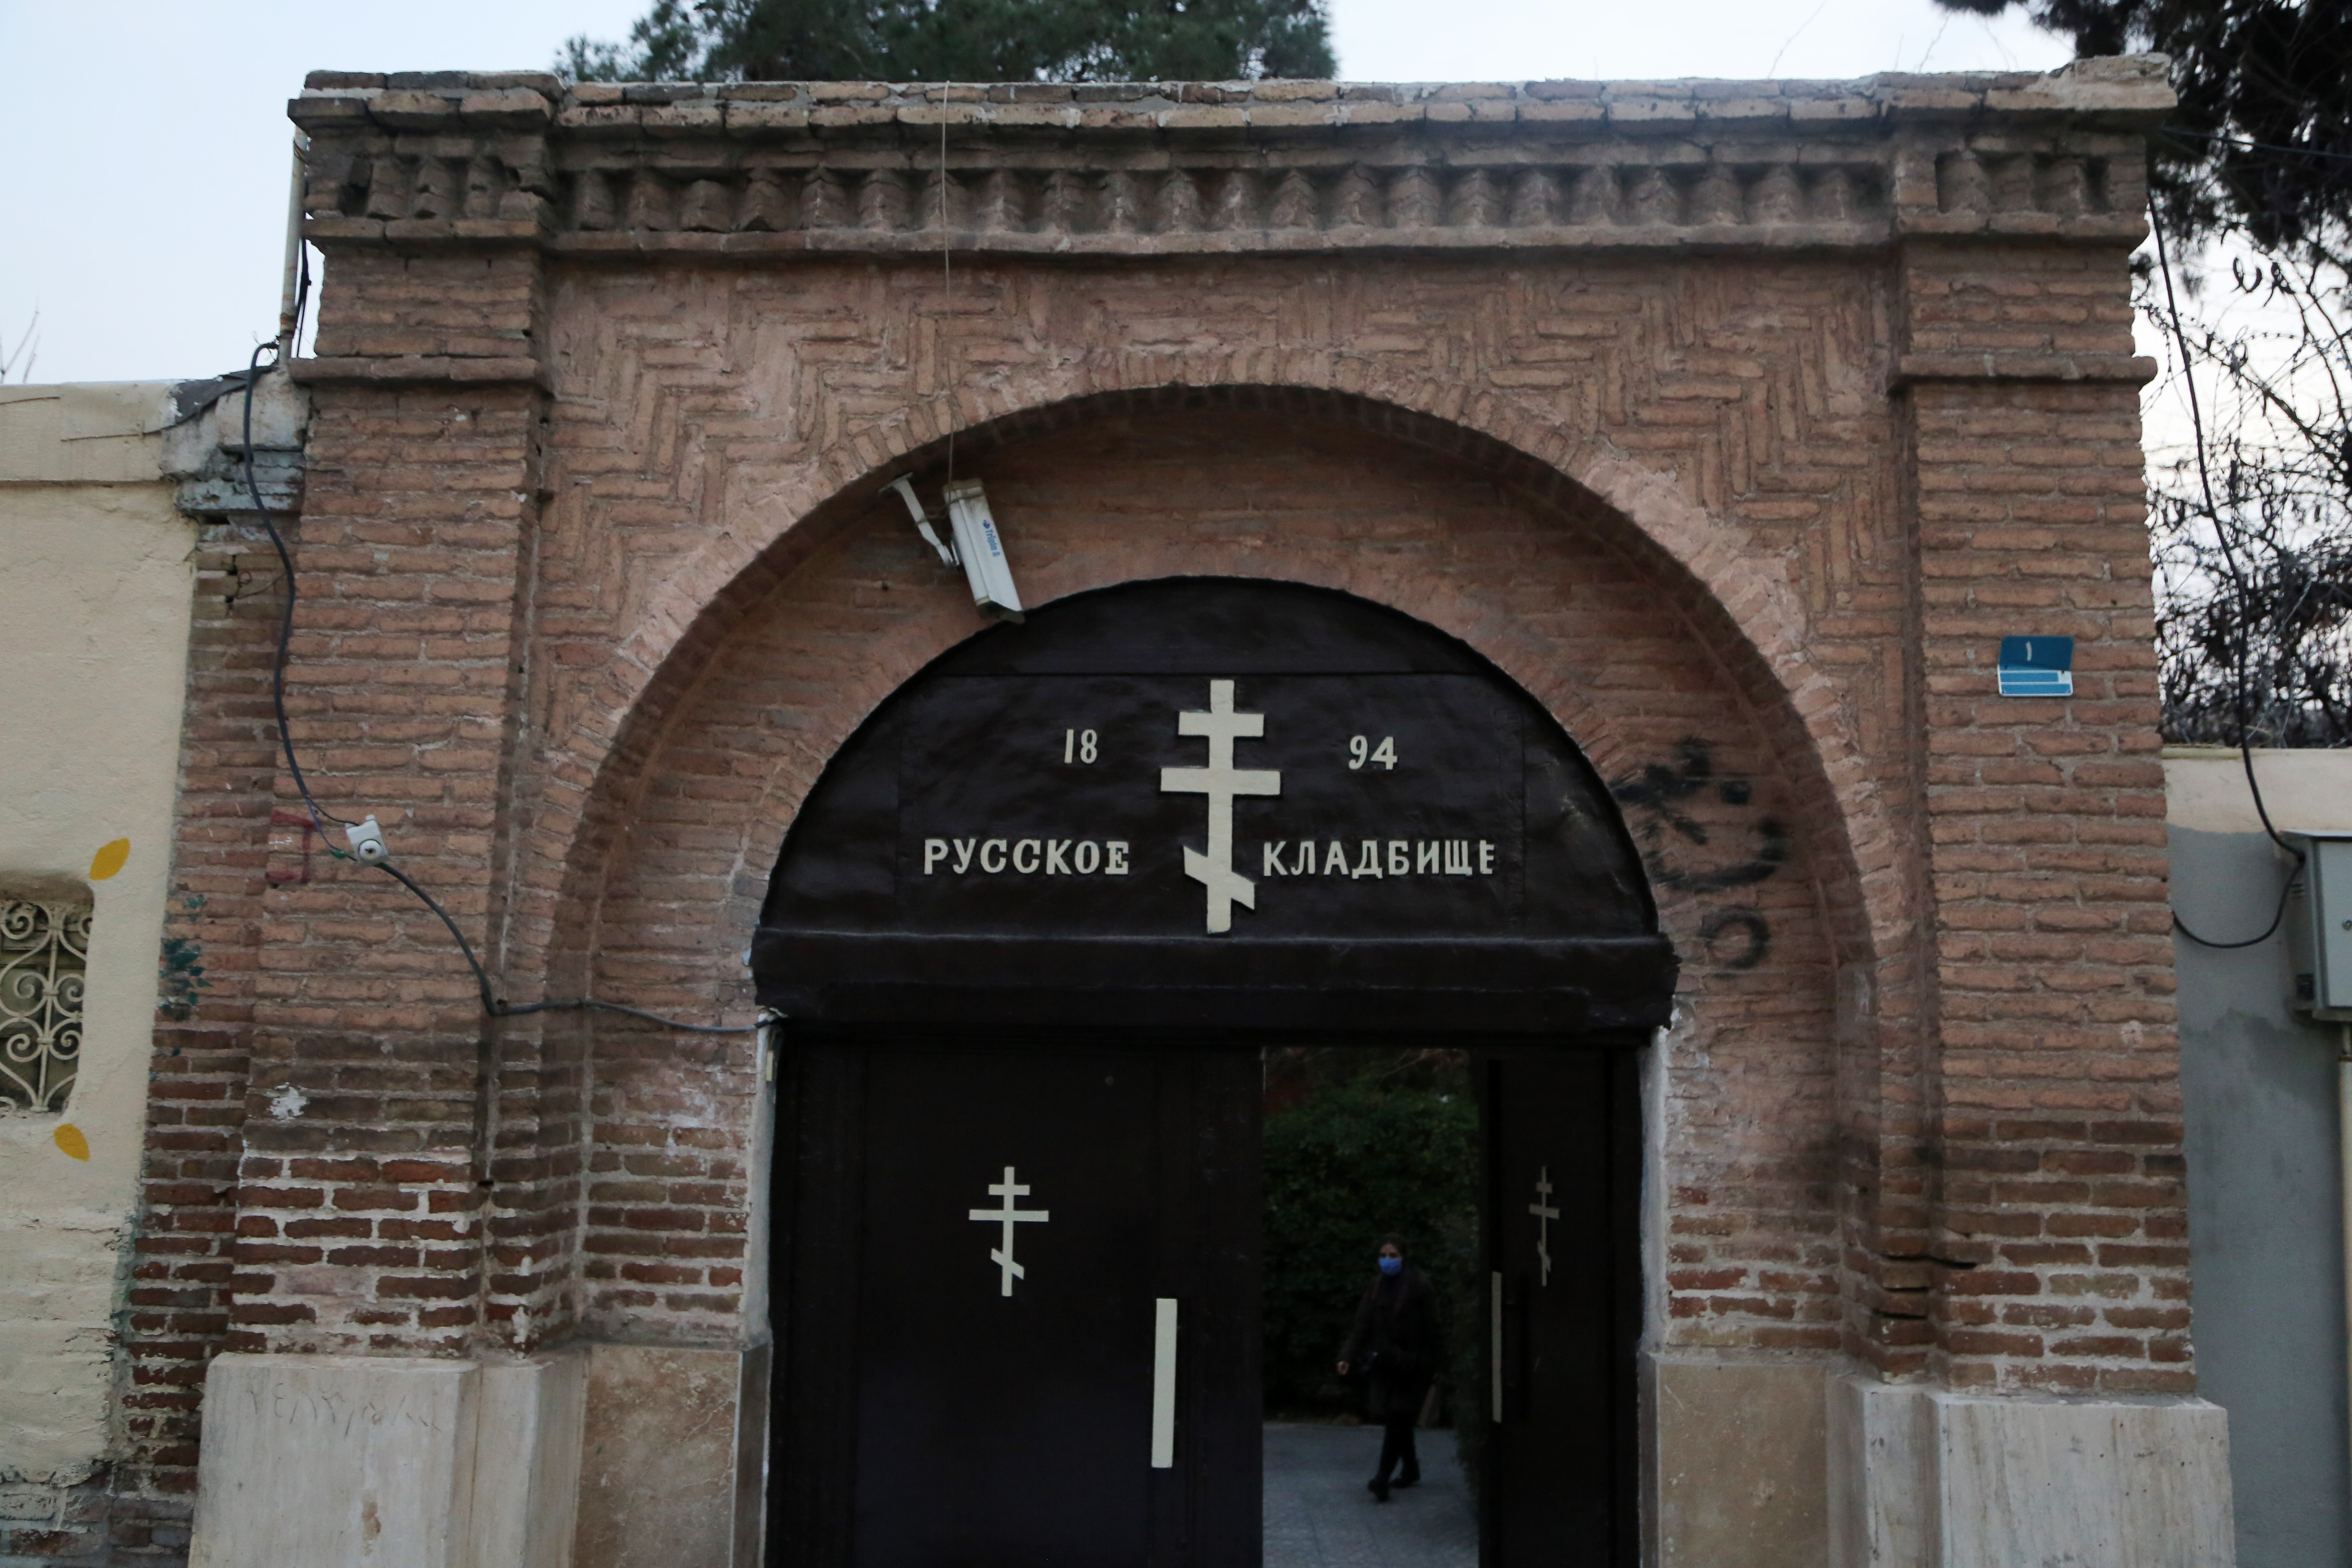 İran'ın başkenti Tahran'ın Dolap mahallesinde bulunan Dulab Hristiyan Mezarlığı, isimleri meçhul Rus askerler, Fransız Kontlar, 2. Dünya Savaşı sırasında vatana dönüş üzere Tahran'da hayatlarını kaybeden Polonyalılar ve Ermenilerin mezarları bulunuyor. Yaklaşık 150 yıl önce kurulan mezarlıkta, yerli ve yabancı önemli şahsiyetlerin mezarları da yer alıyor.